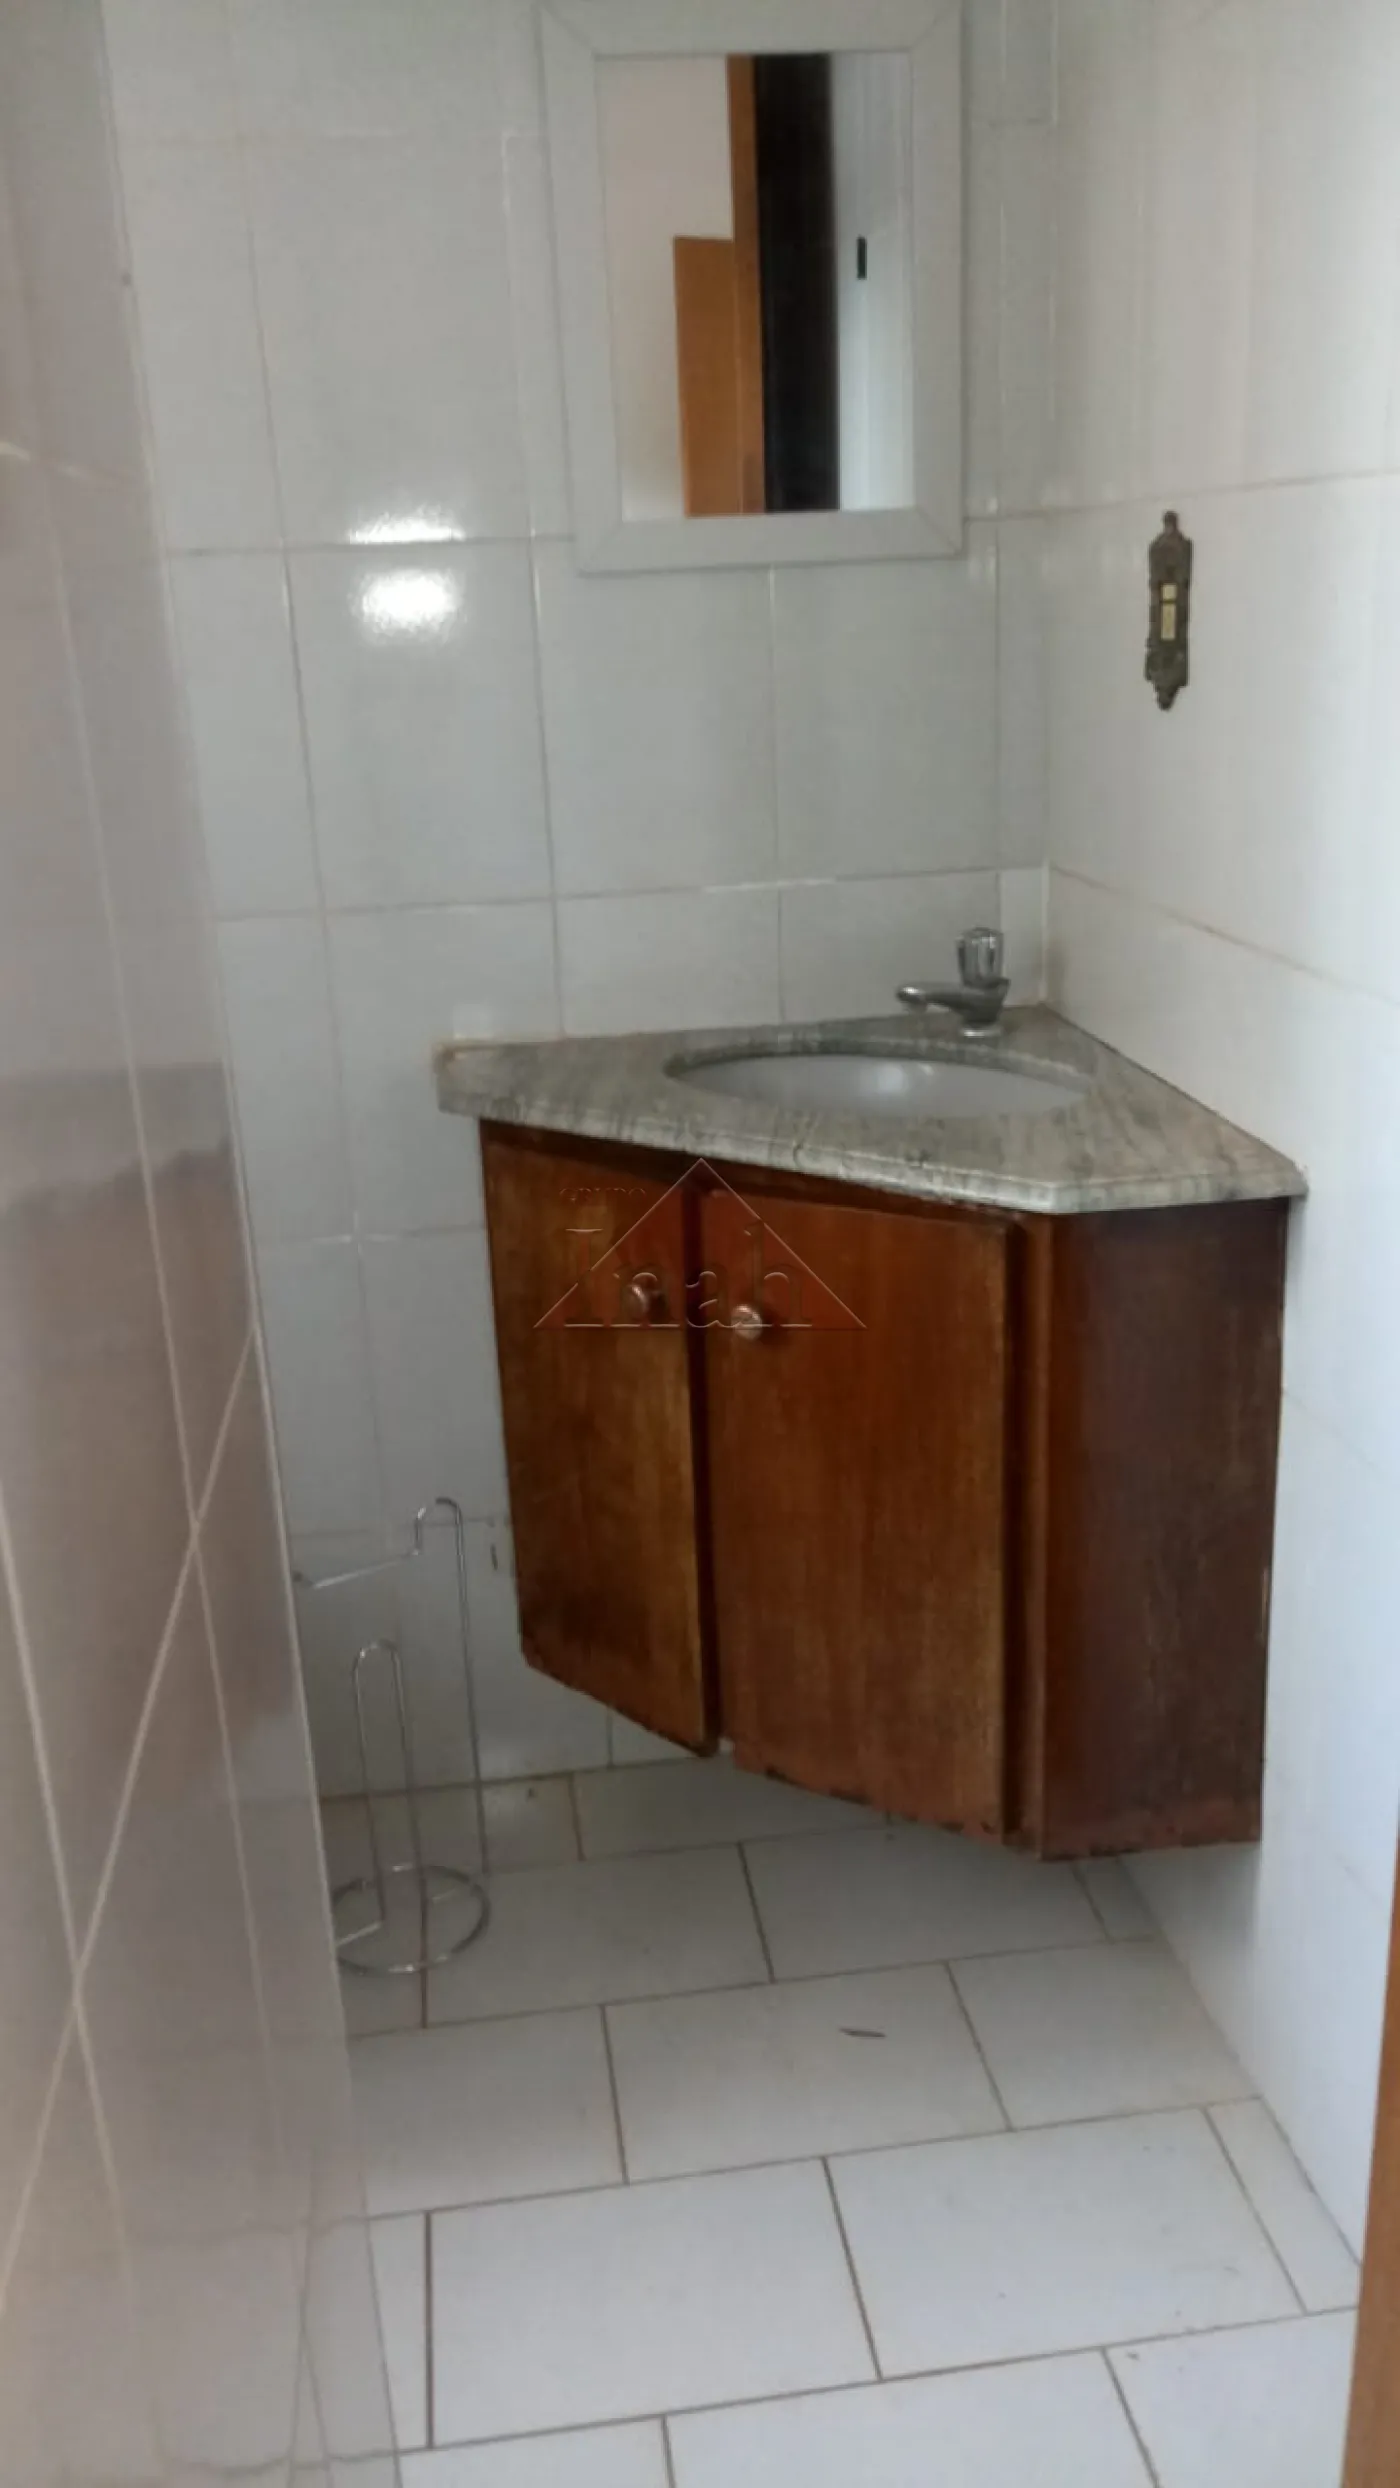 Alugar Apartamentos / Apartamento em Ribeirão Preto R$ 750,00 - Foto 8